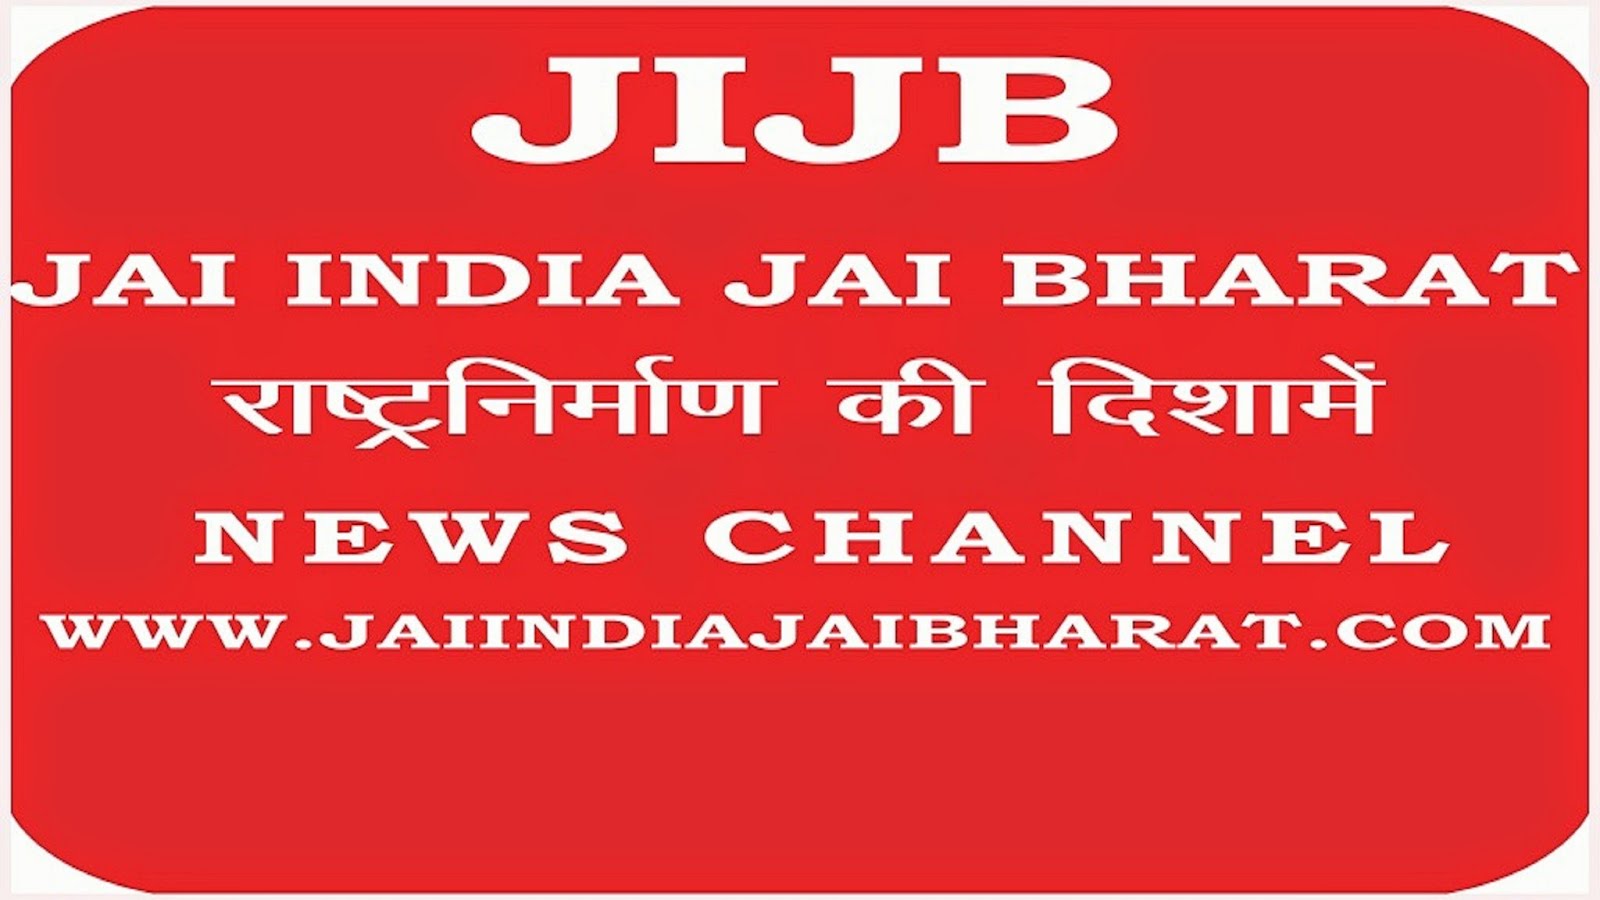 www.jaiindiajaibharat.com